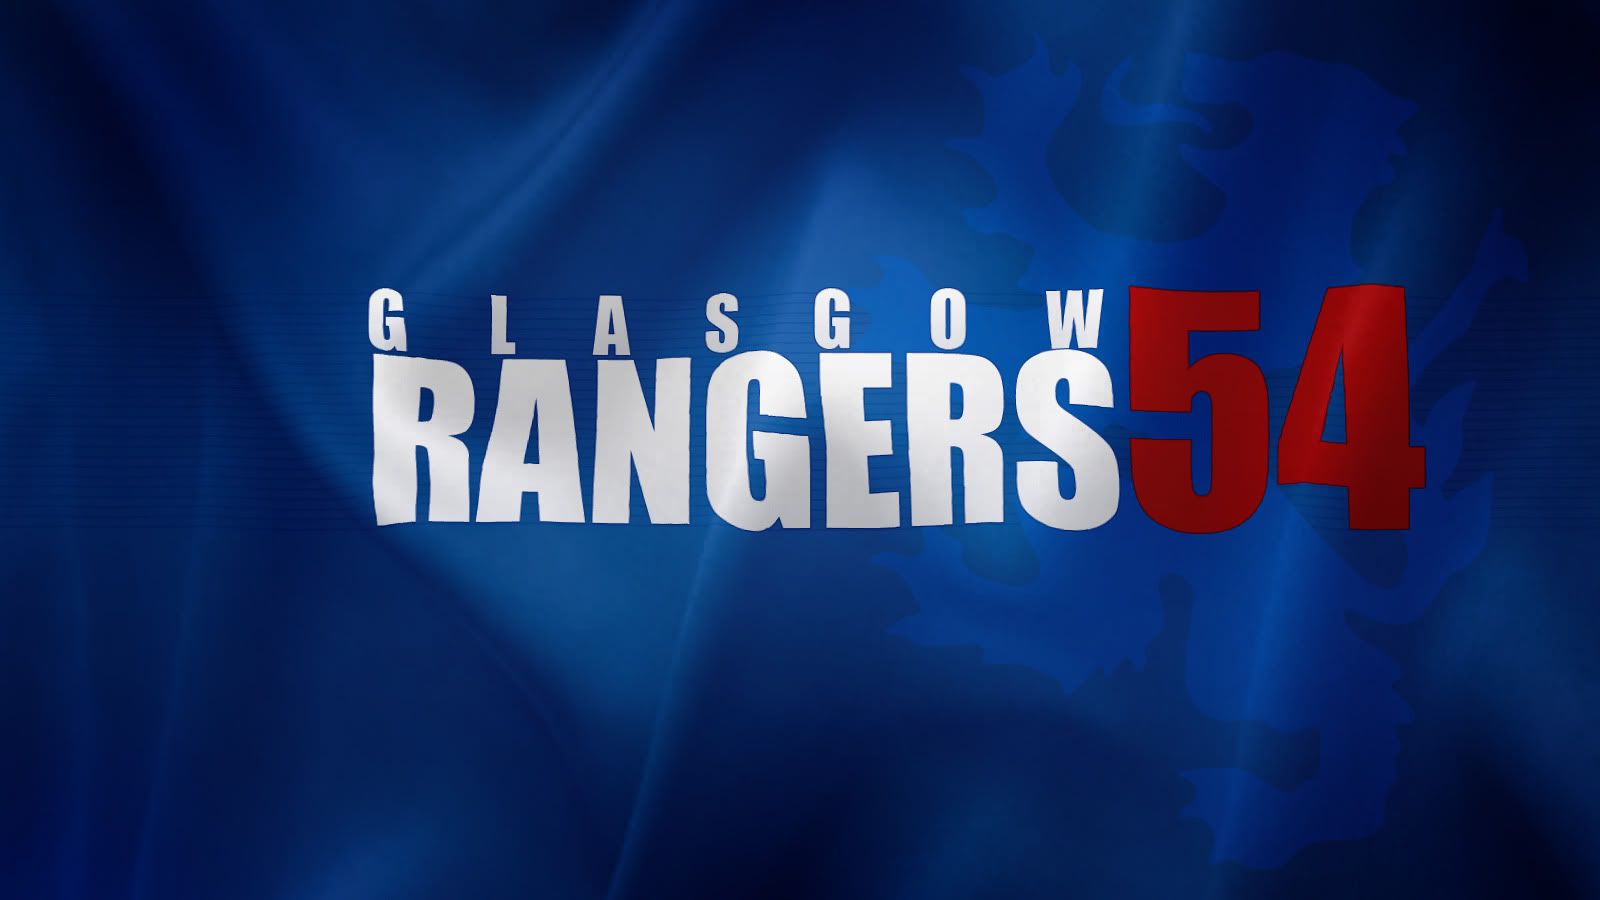 Rangers-54-Wallpaper.jpg